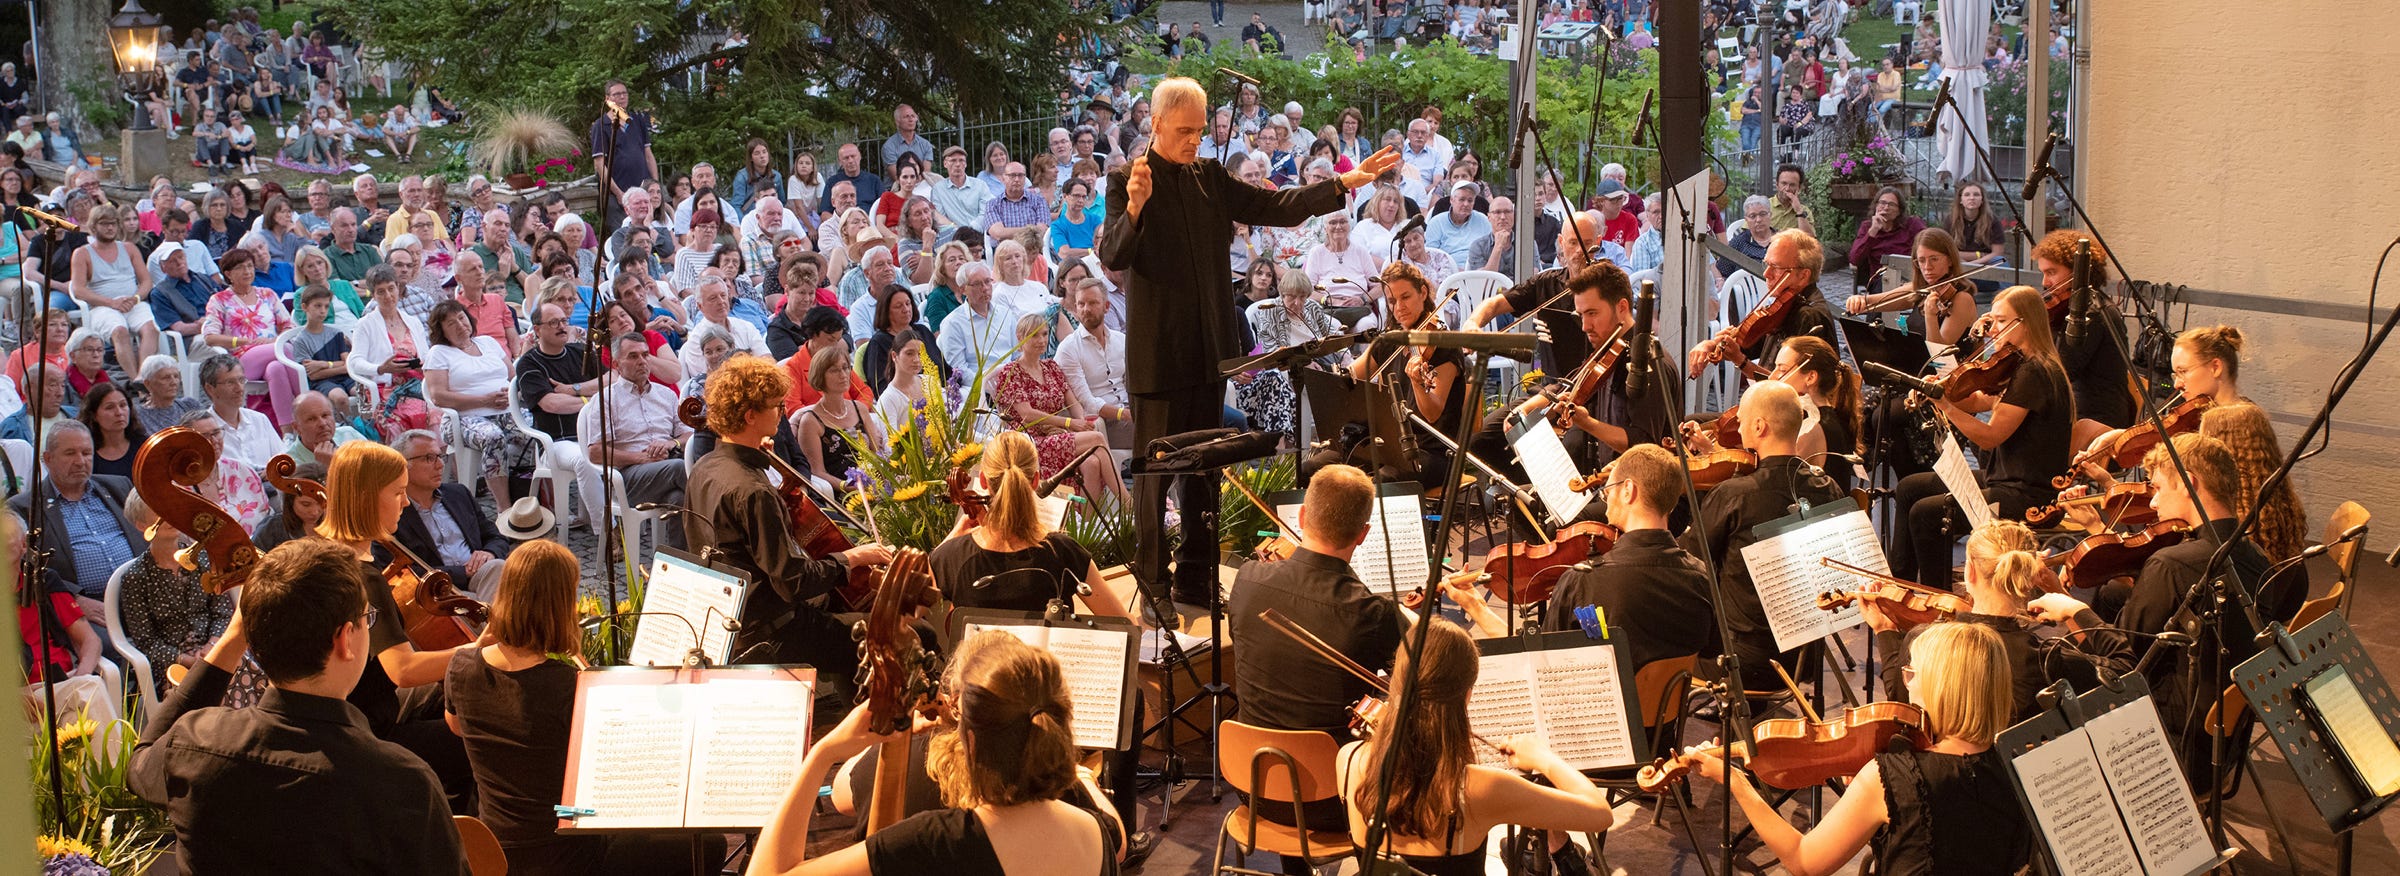 Der langjährige Konzertmeister des Orchesters, Andreas Treibel, übernahm 2010 die künstlerische Leitung der Jungen Philharmonie und legt seitdem den Schwerpunkt verstärkt auf große sinfonische Musik und auf Kooperationskonzerte mit Chören aus dem Ausland